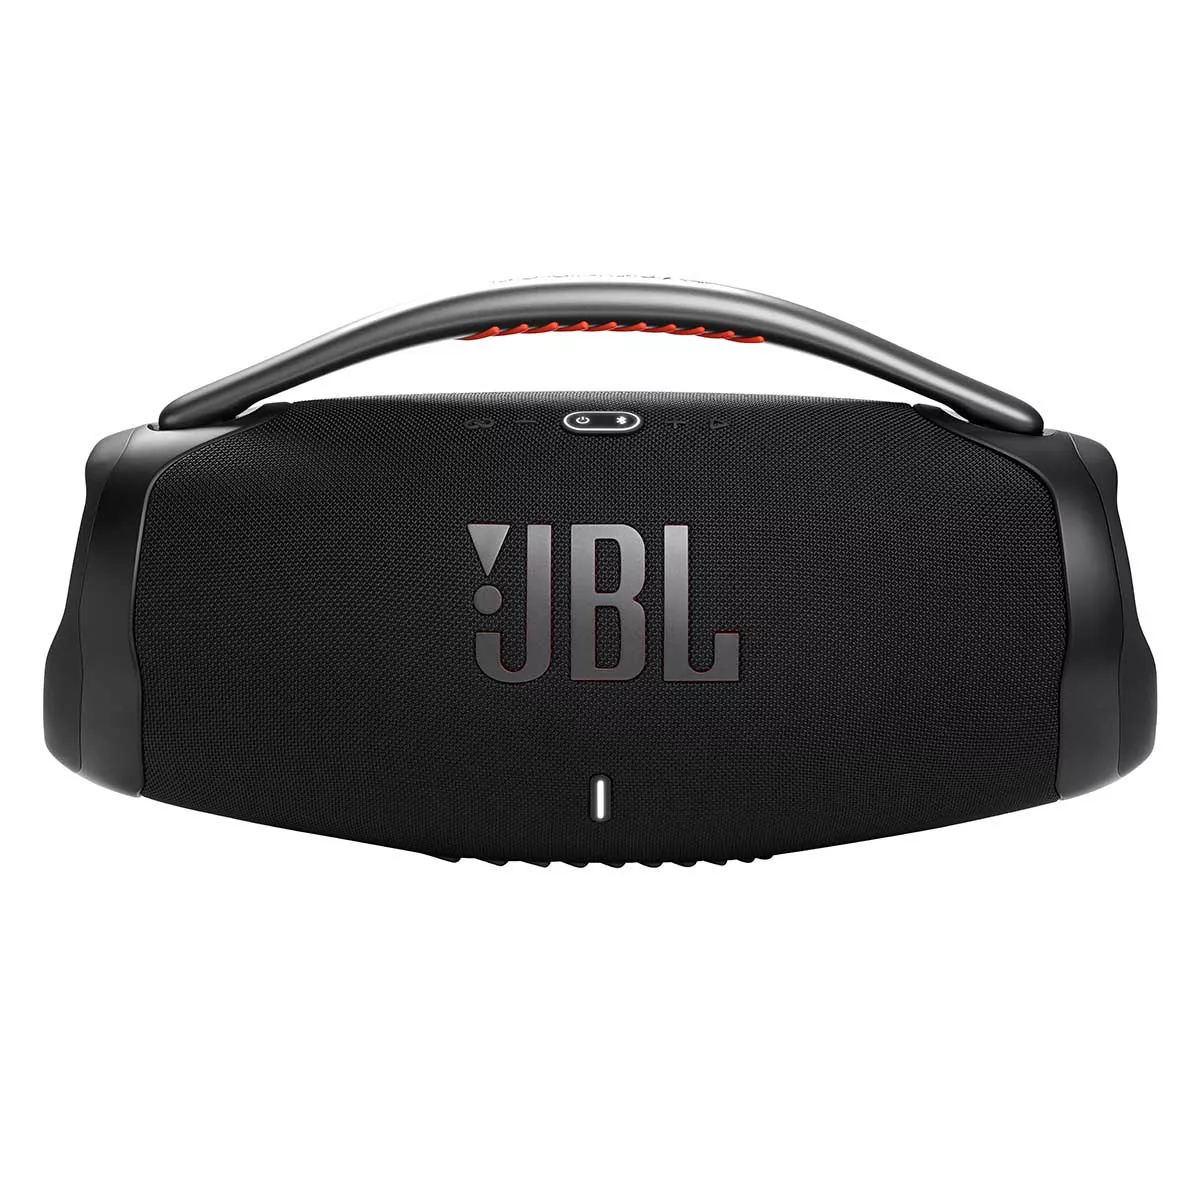 Caixa De Som Jbl Boombox 3 180w Rms Bluetooth Bateria At 24 Horas  Prova De gua Preta